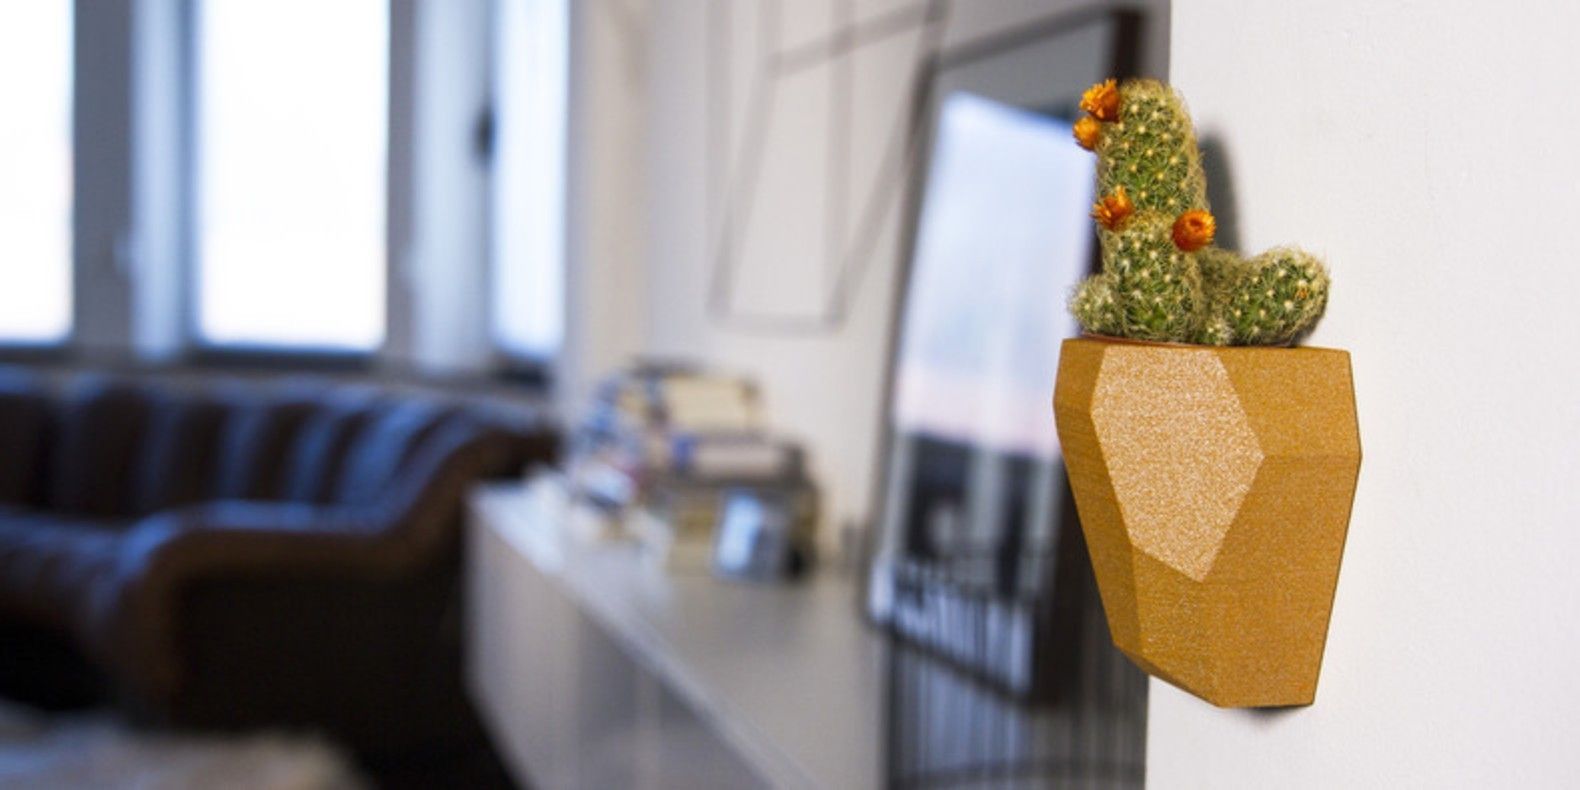 Voici une sélection des meilleurs fichiers 3D pour imprimer en 3D ses pots de fleurs